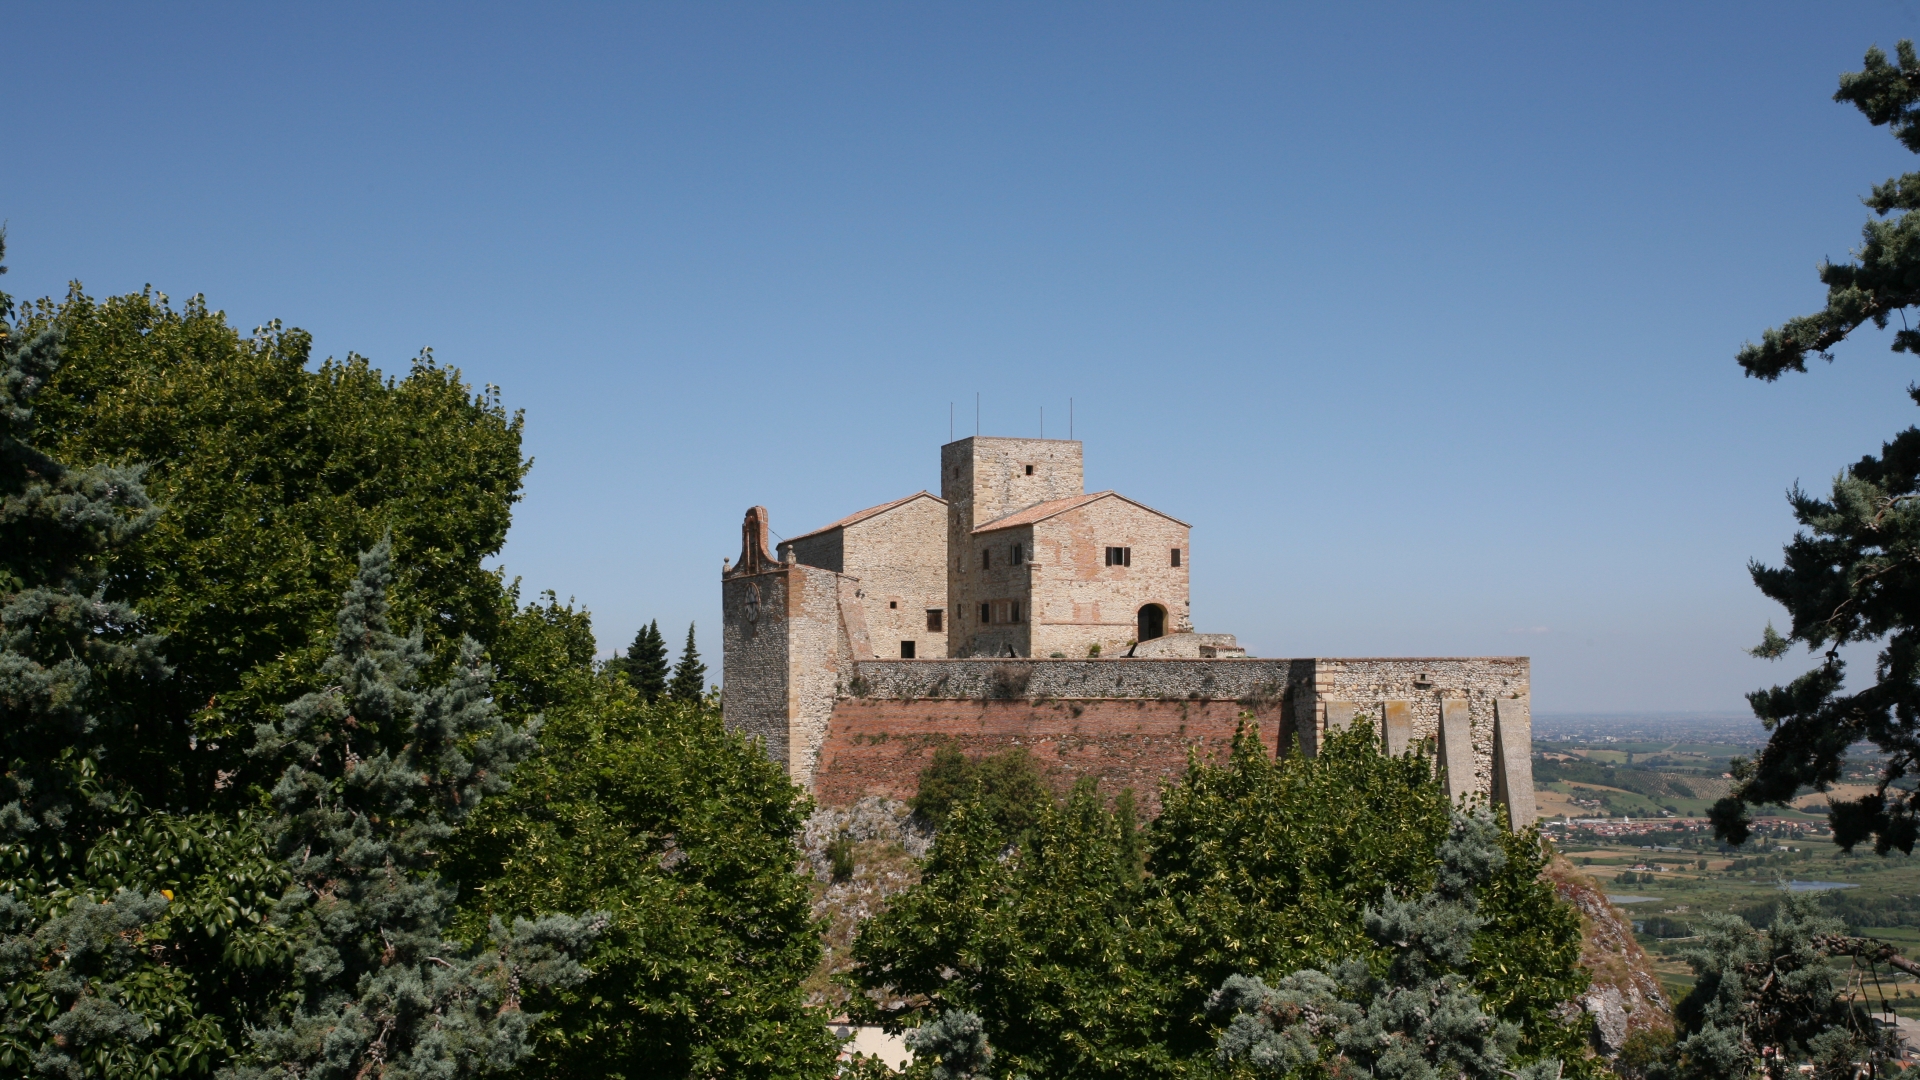 Verucchio | Rocca Malatestiana foto di Paritani